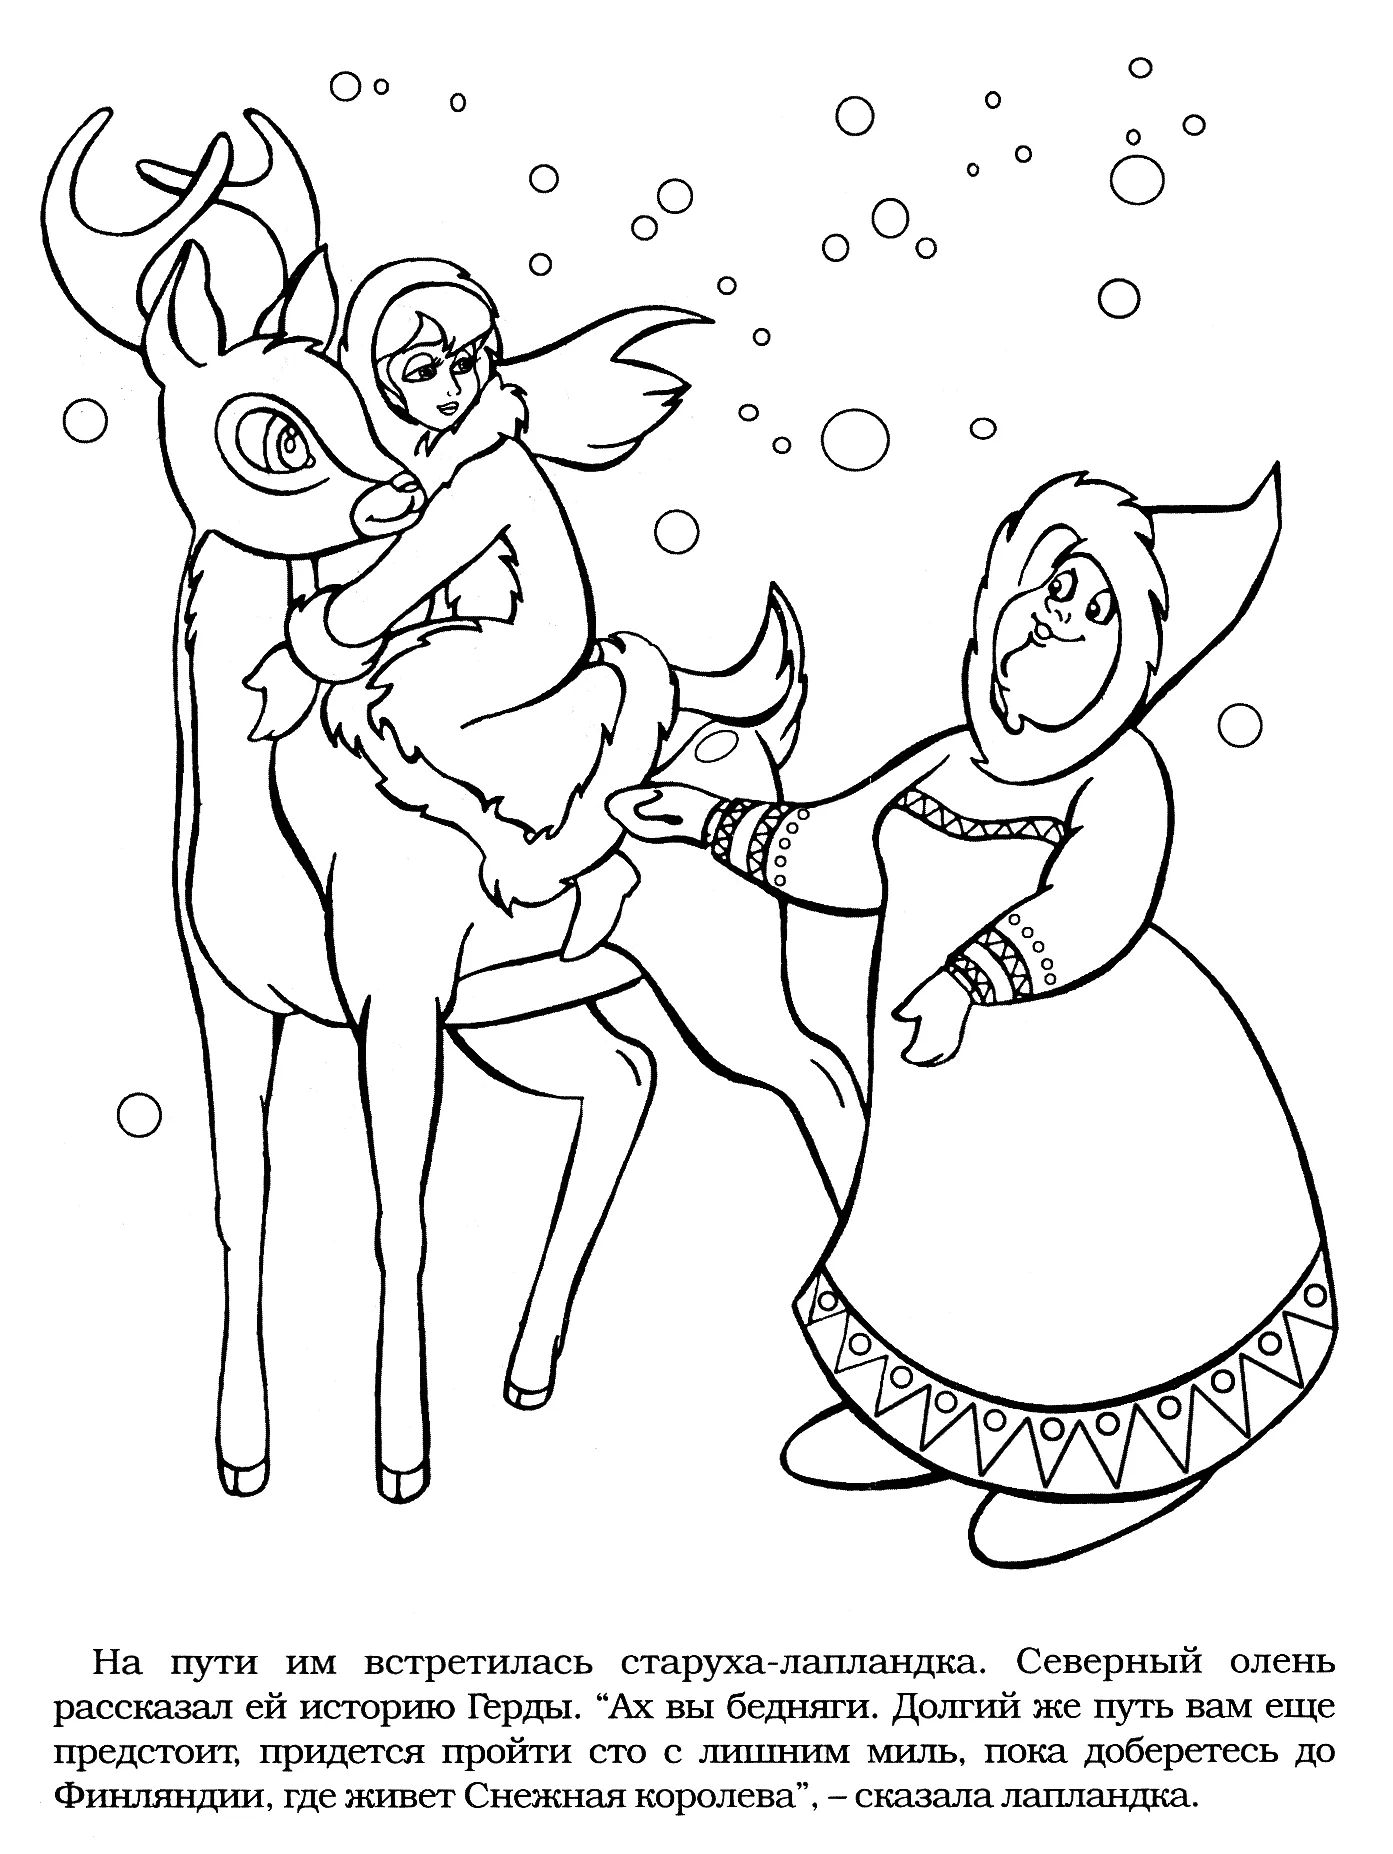 Иллюстрация к сказке снежная королева легко. Раскраска снежной королевы из сказки Снежная Королева.